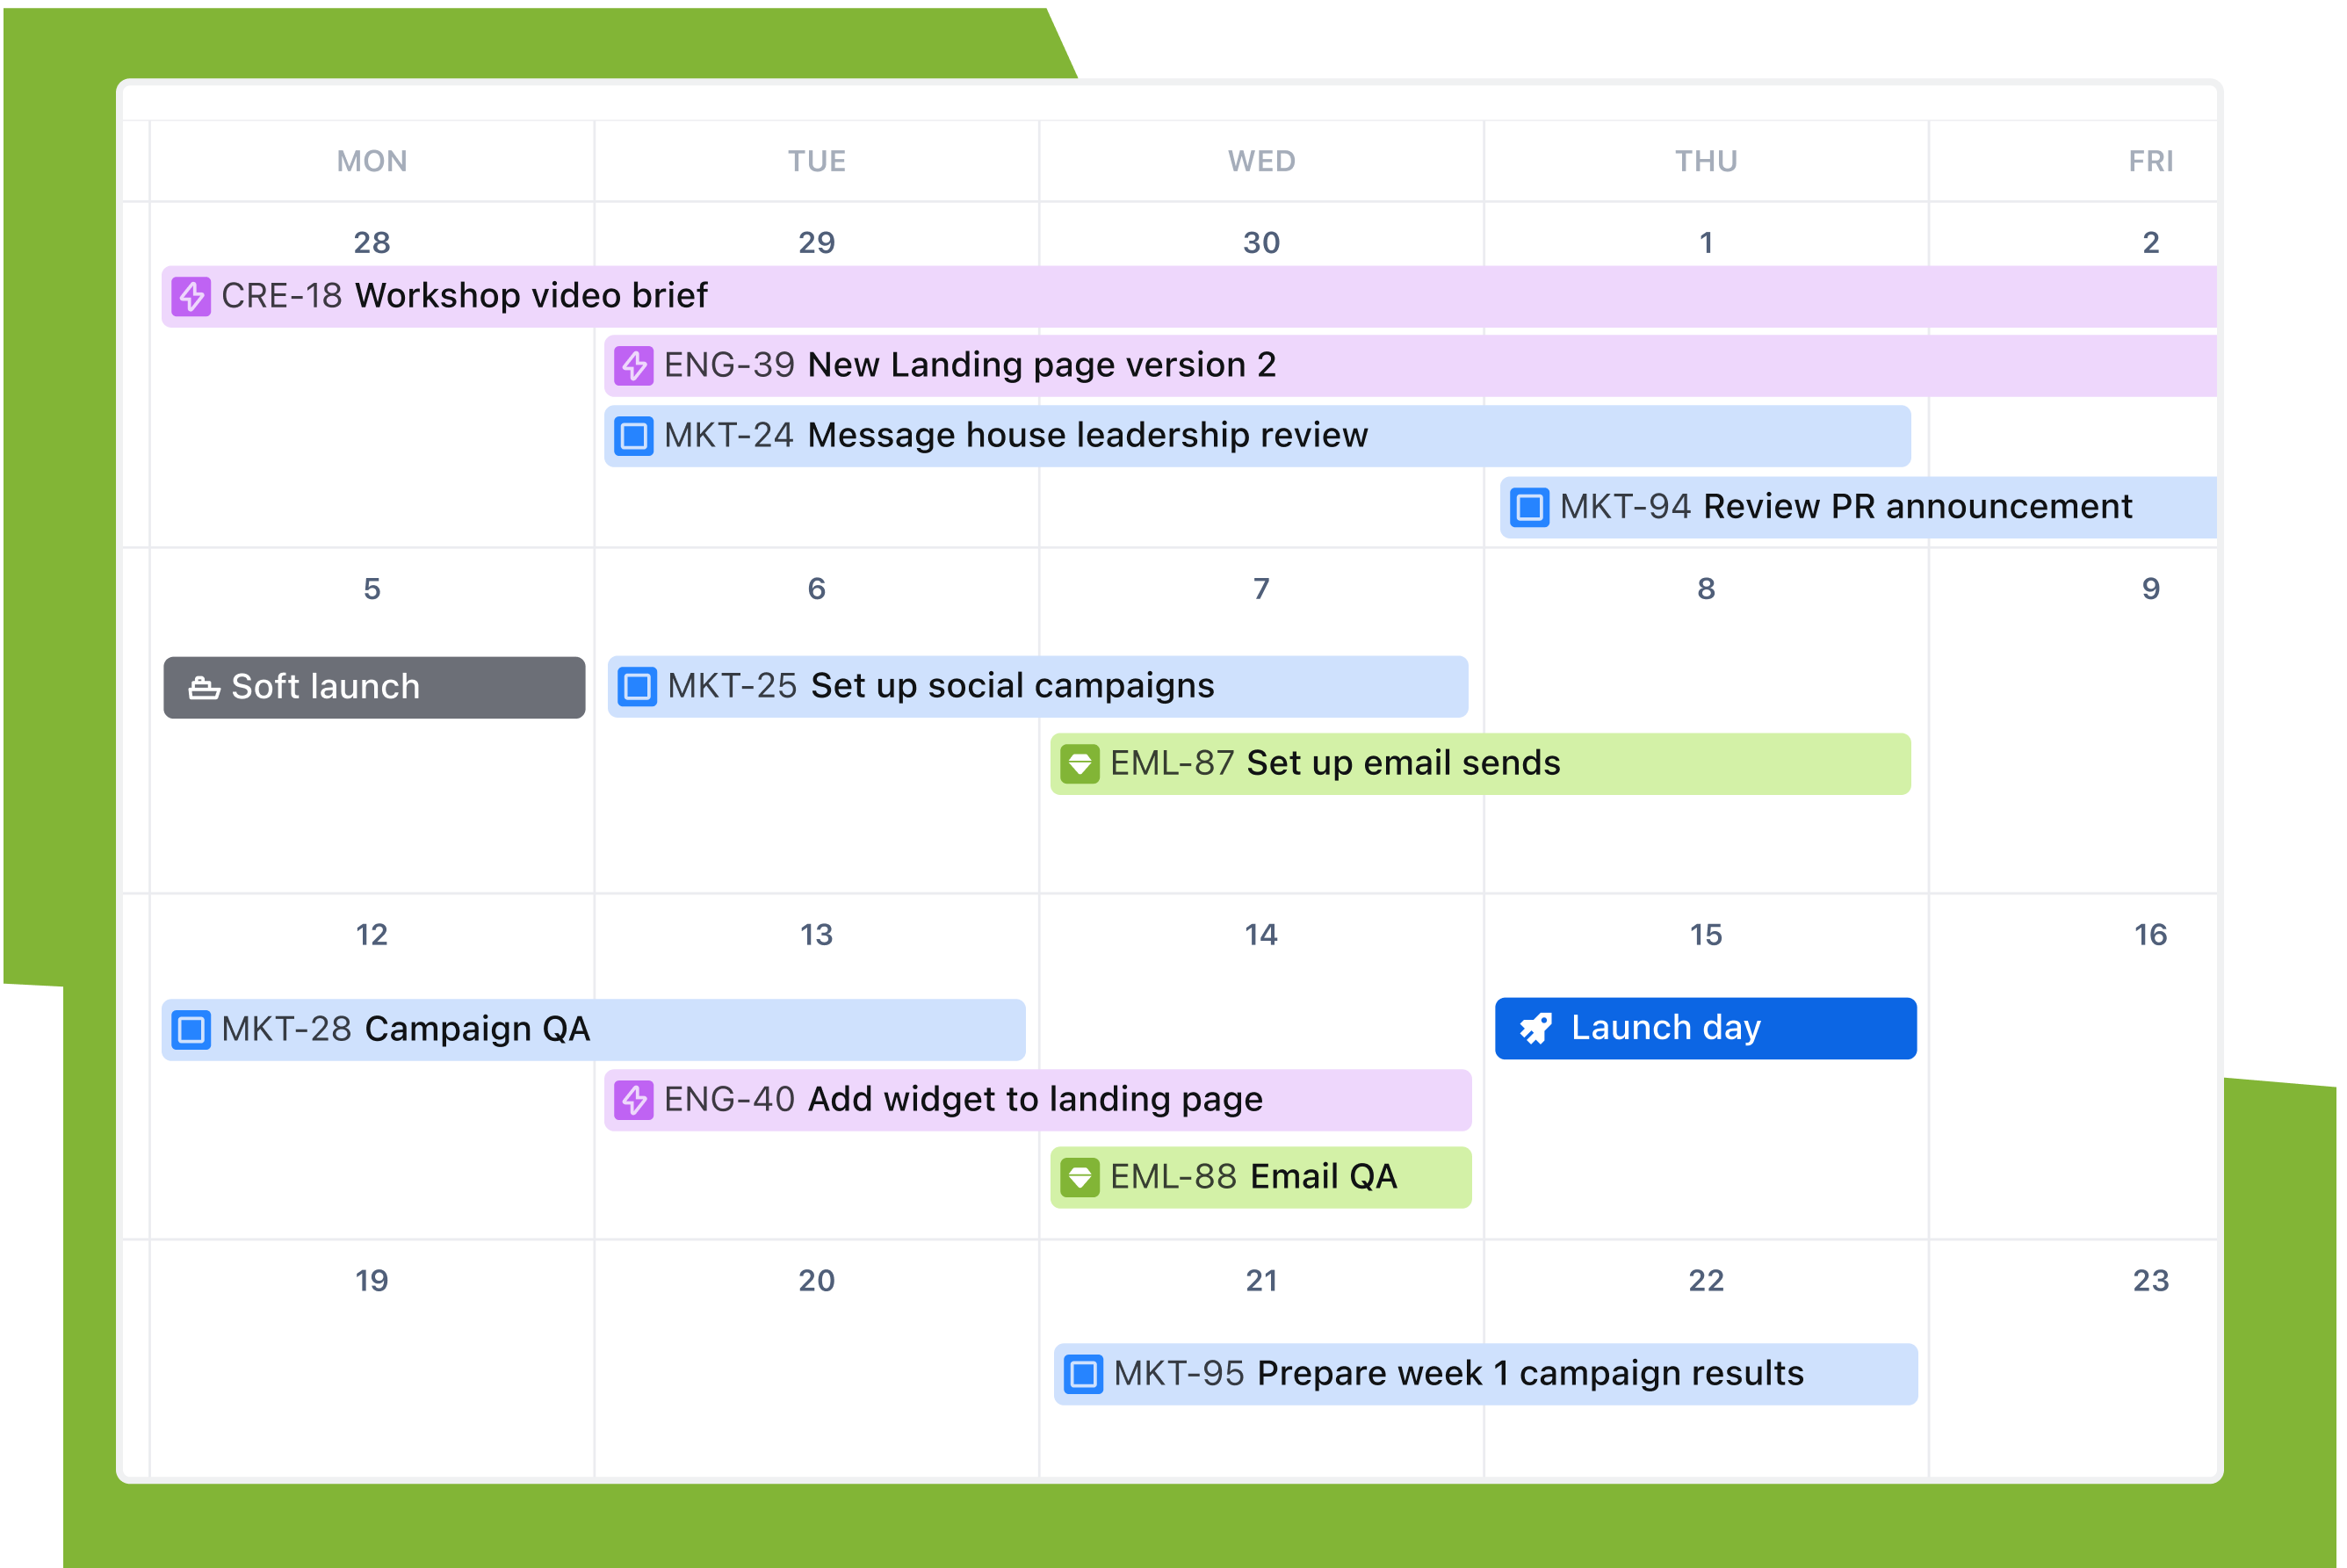 Vista Calendario de un proyecto de Jira en el que se superponen tareas de diferentes equipos para preparar un lanzamiento de marketing.